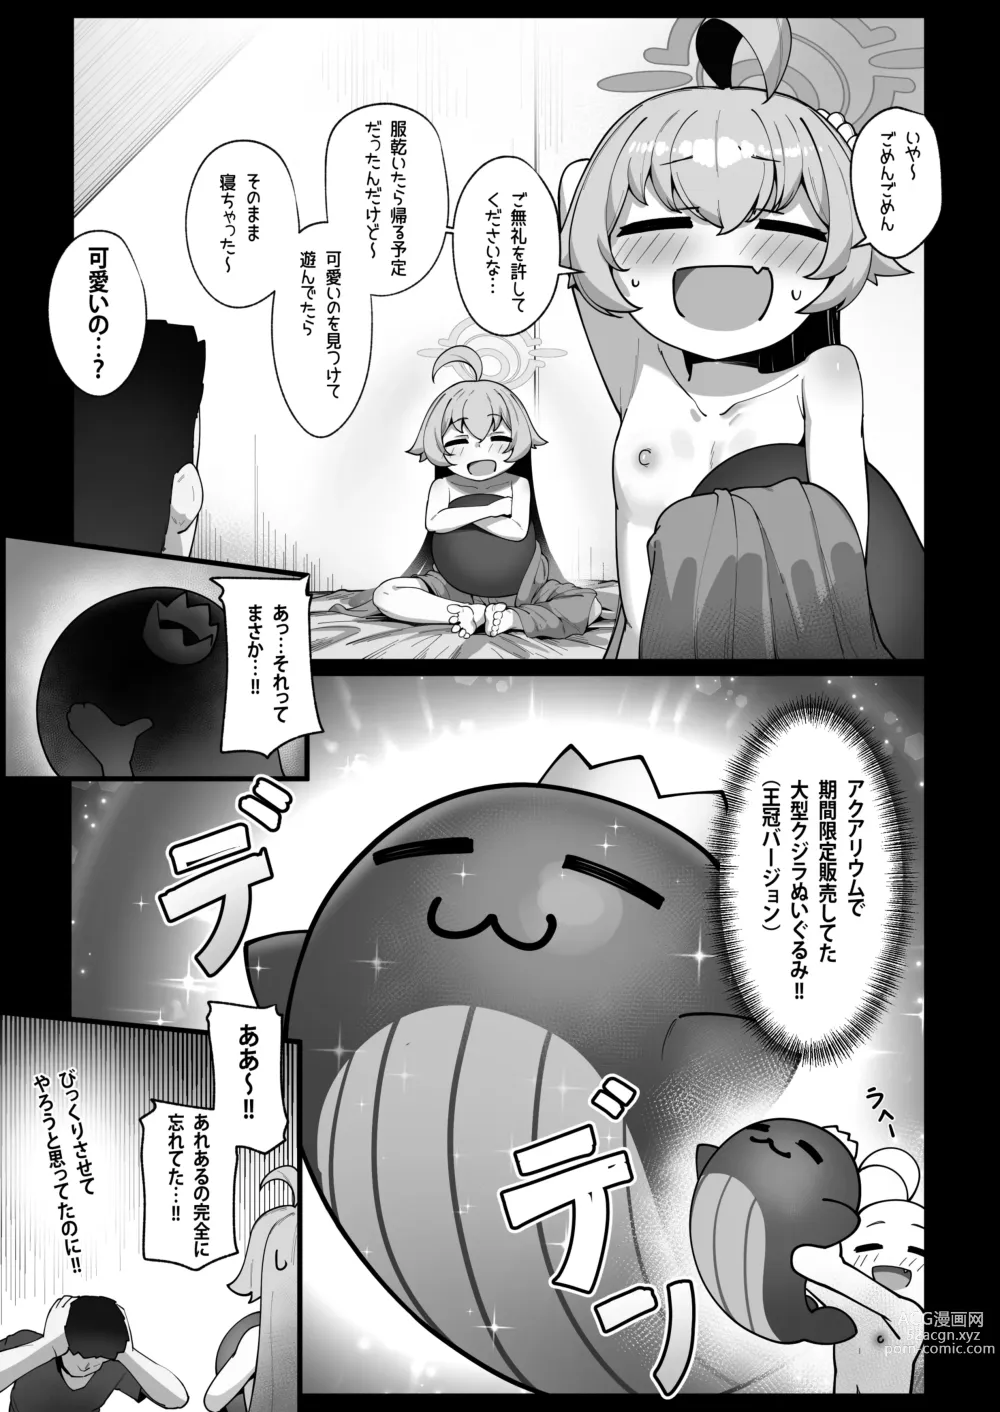 Page 8 of doujinshi Kujira wa Chiisana Shiawase wo Yumemiru (uncensored)